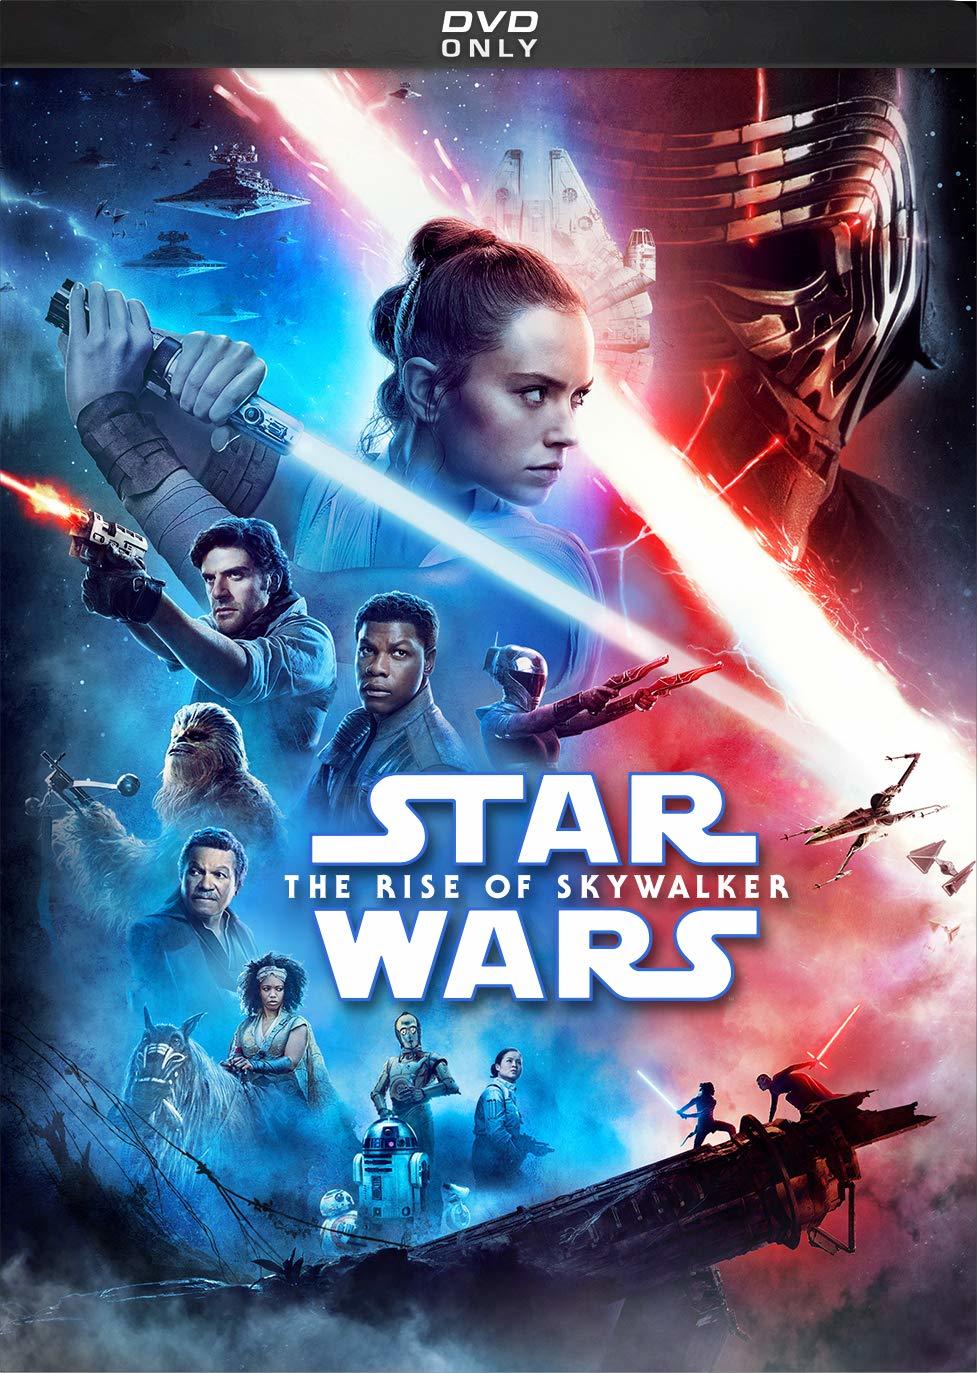 wars - Star Wars: Episode IX - The Rise of Skywalker (2019) Star Wars: El Ascenso de Skywalker (2019) [AC3 5.1 + SRT] [DVD-Rip] [GOOGLEDRIVE*] 149225_front